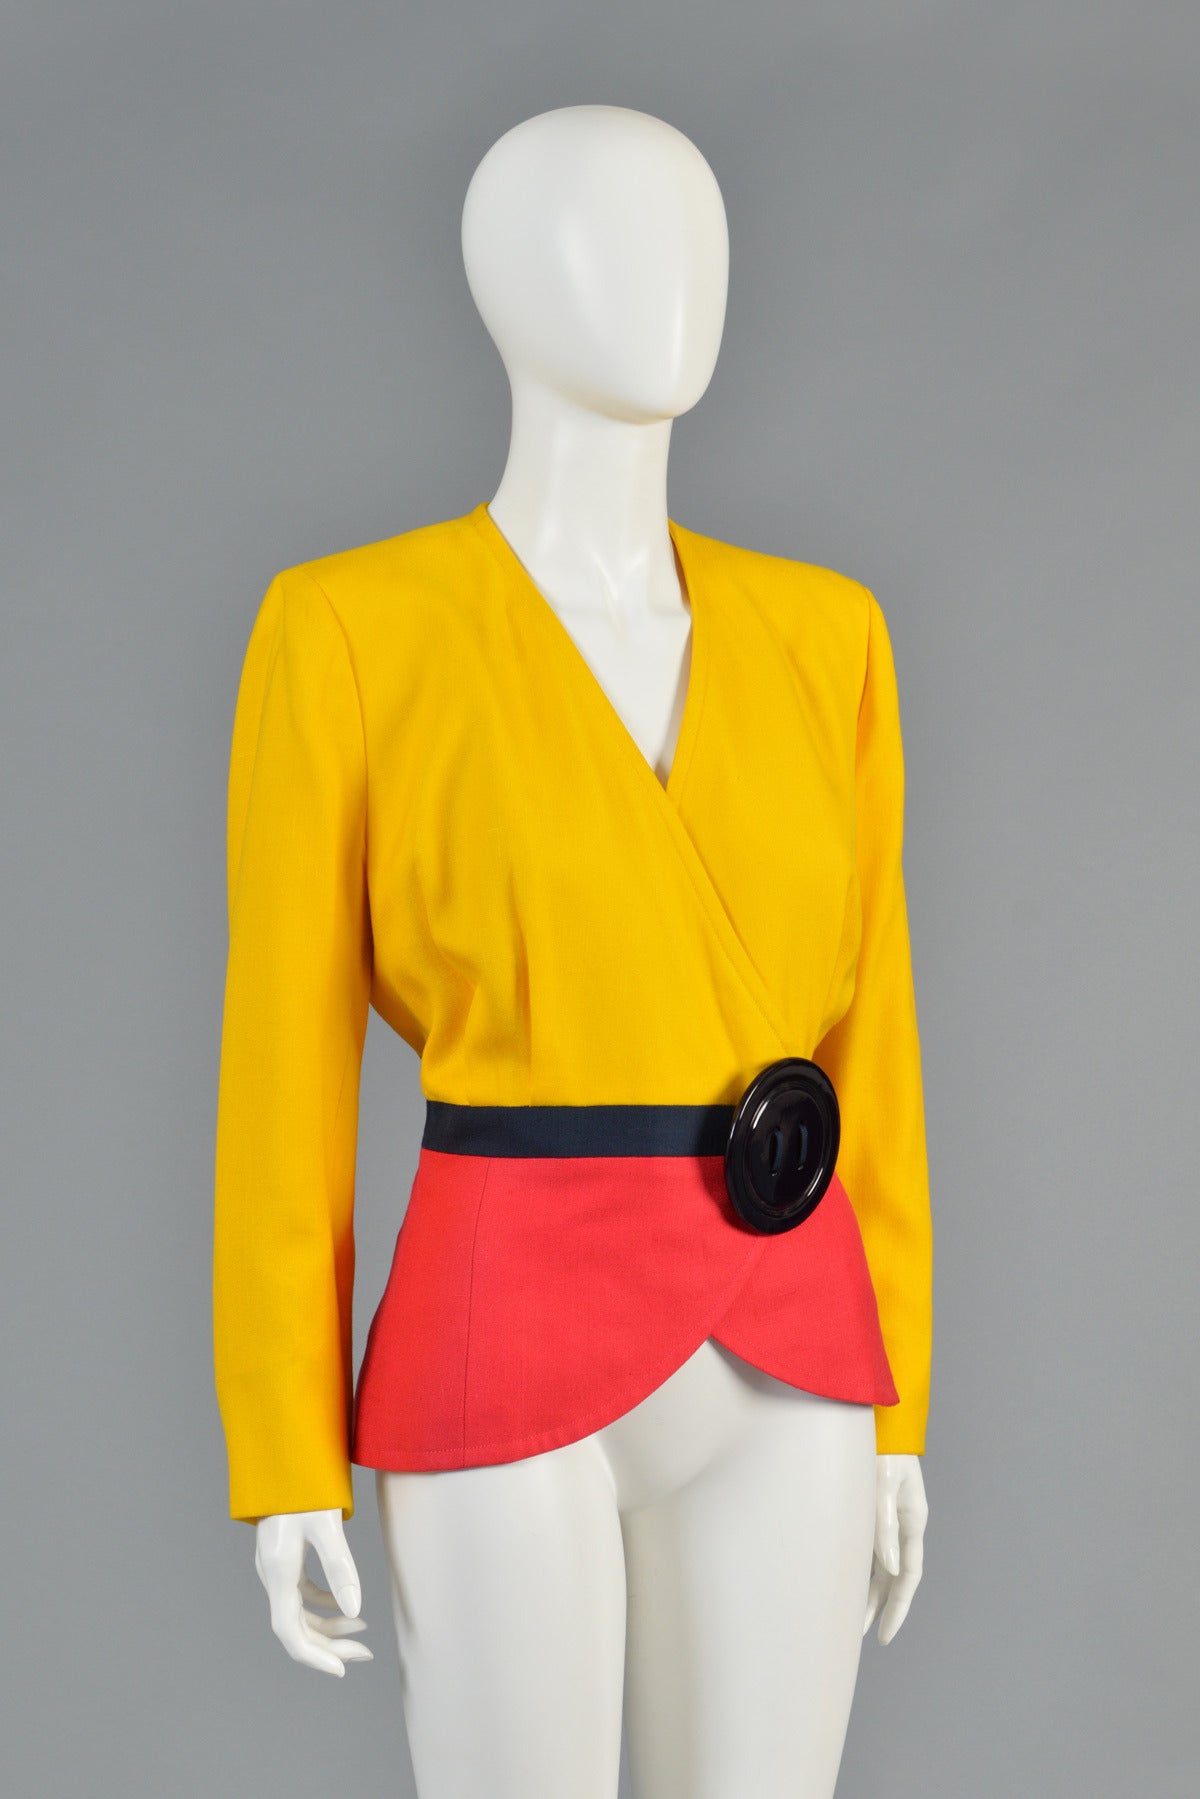 Women's 1989 Oscar de la Renta for Pierre Balmain Haute Couture Colorblocked Jacket For Sale